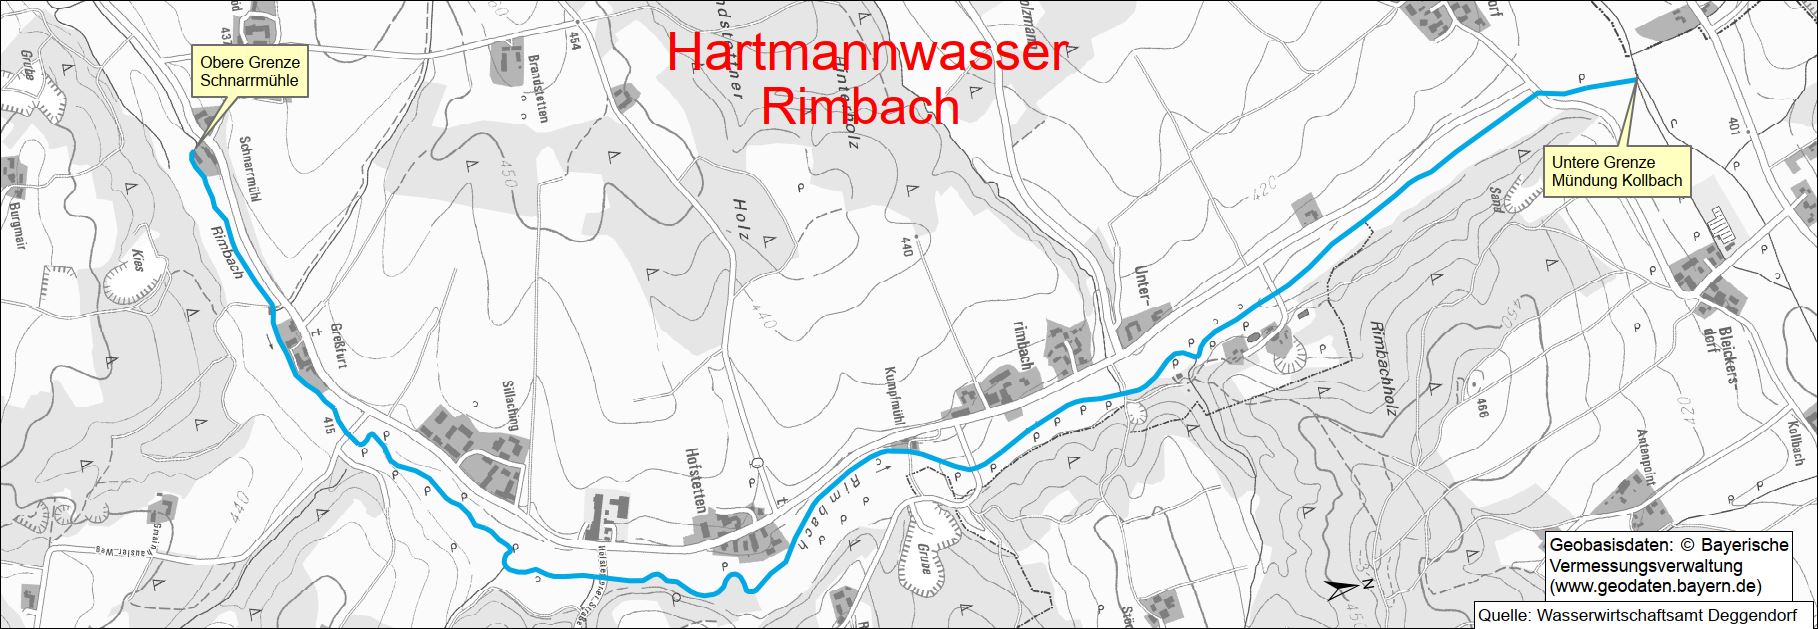 Hartmannwasser Rimbach